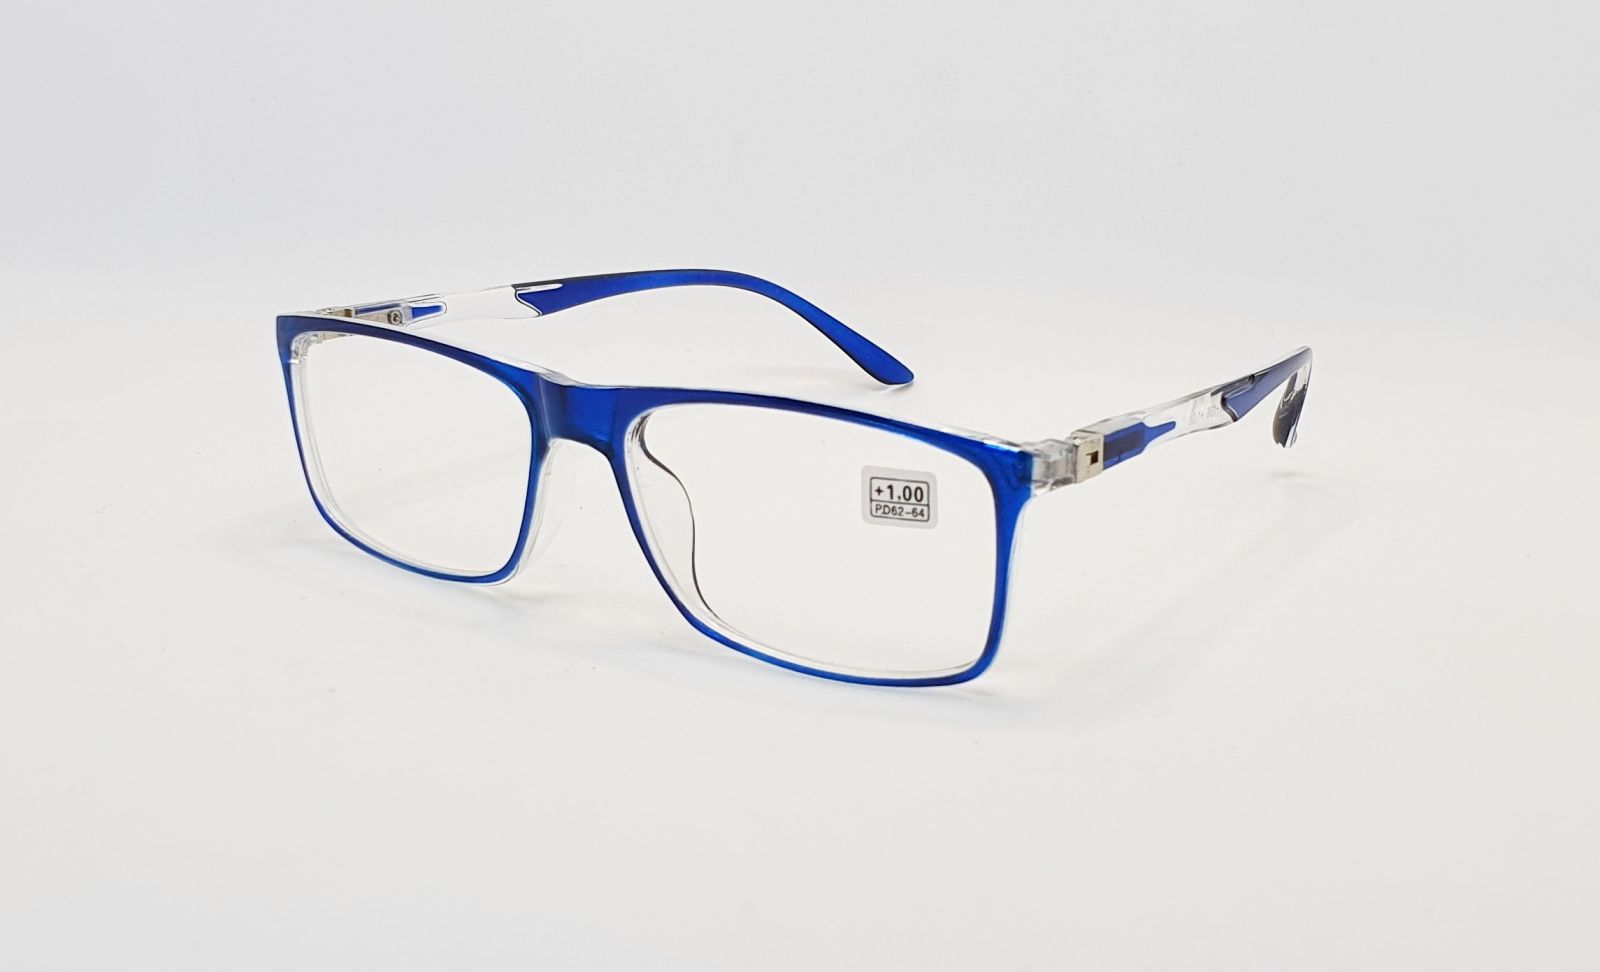 Dioptrické brýle CH8811 +2,00 blue flex